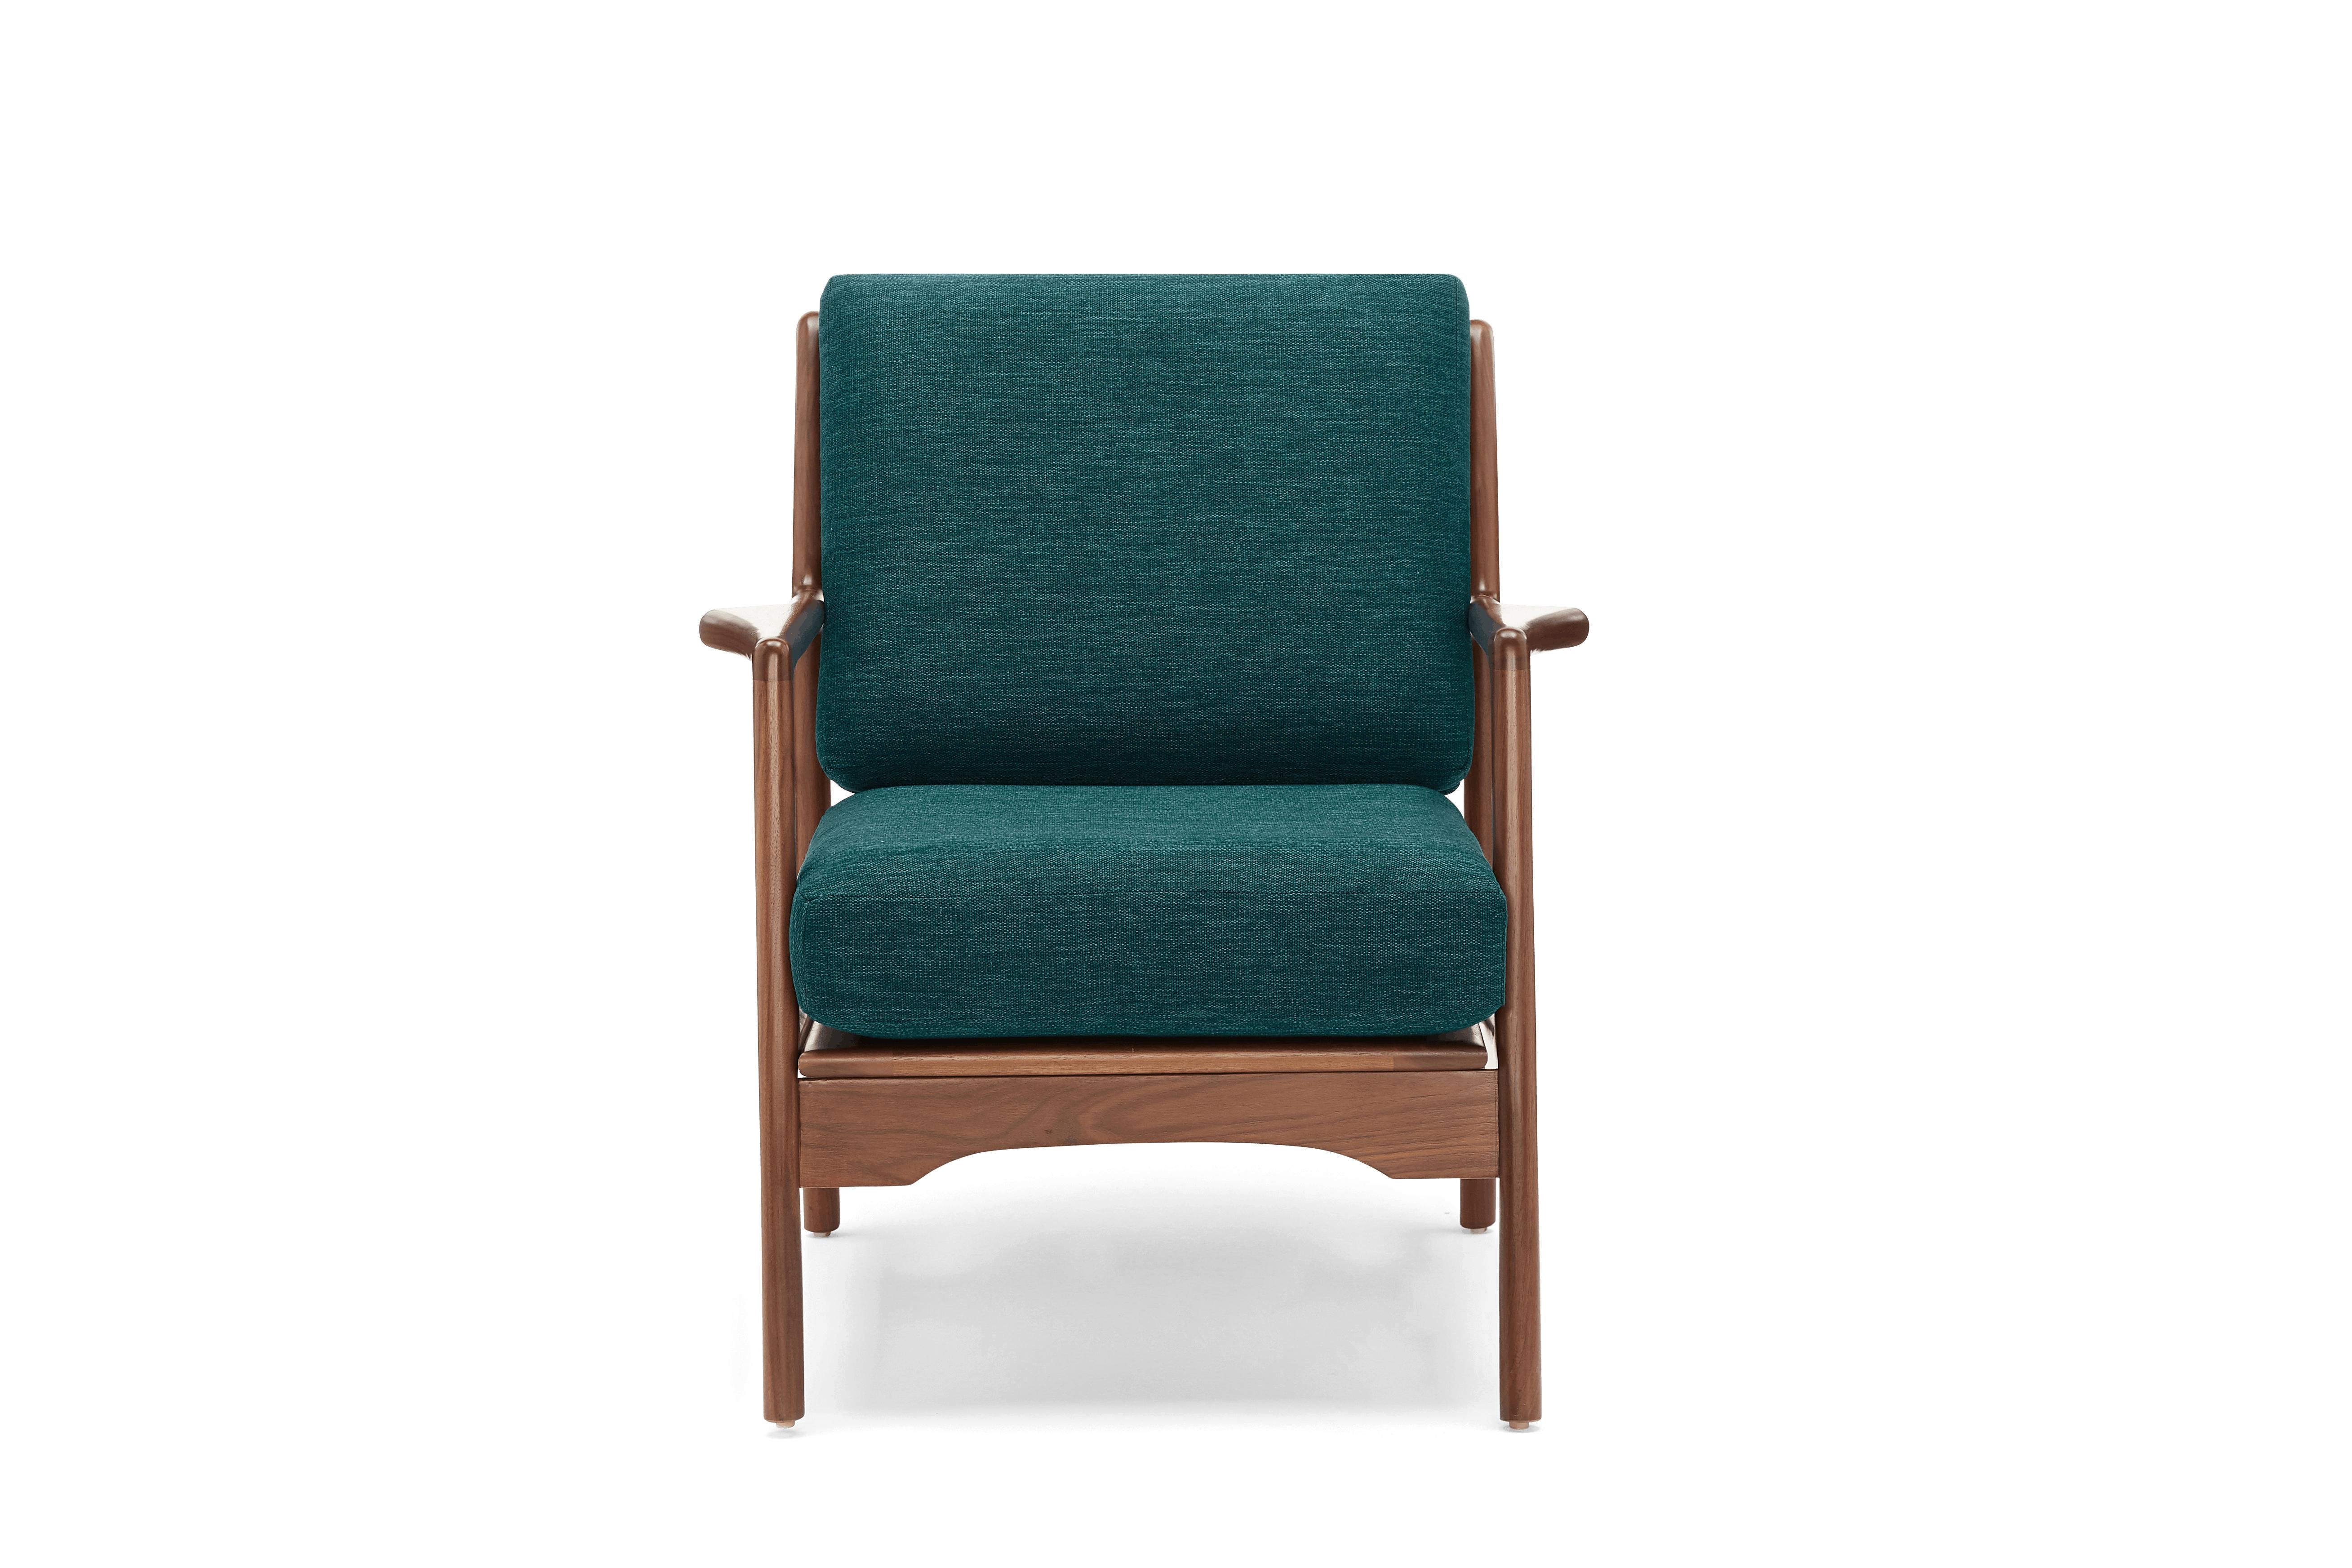 Blue Collins Mid Century Modern Chair - Key Largo Zenith Teal - Walnut - Image 0